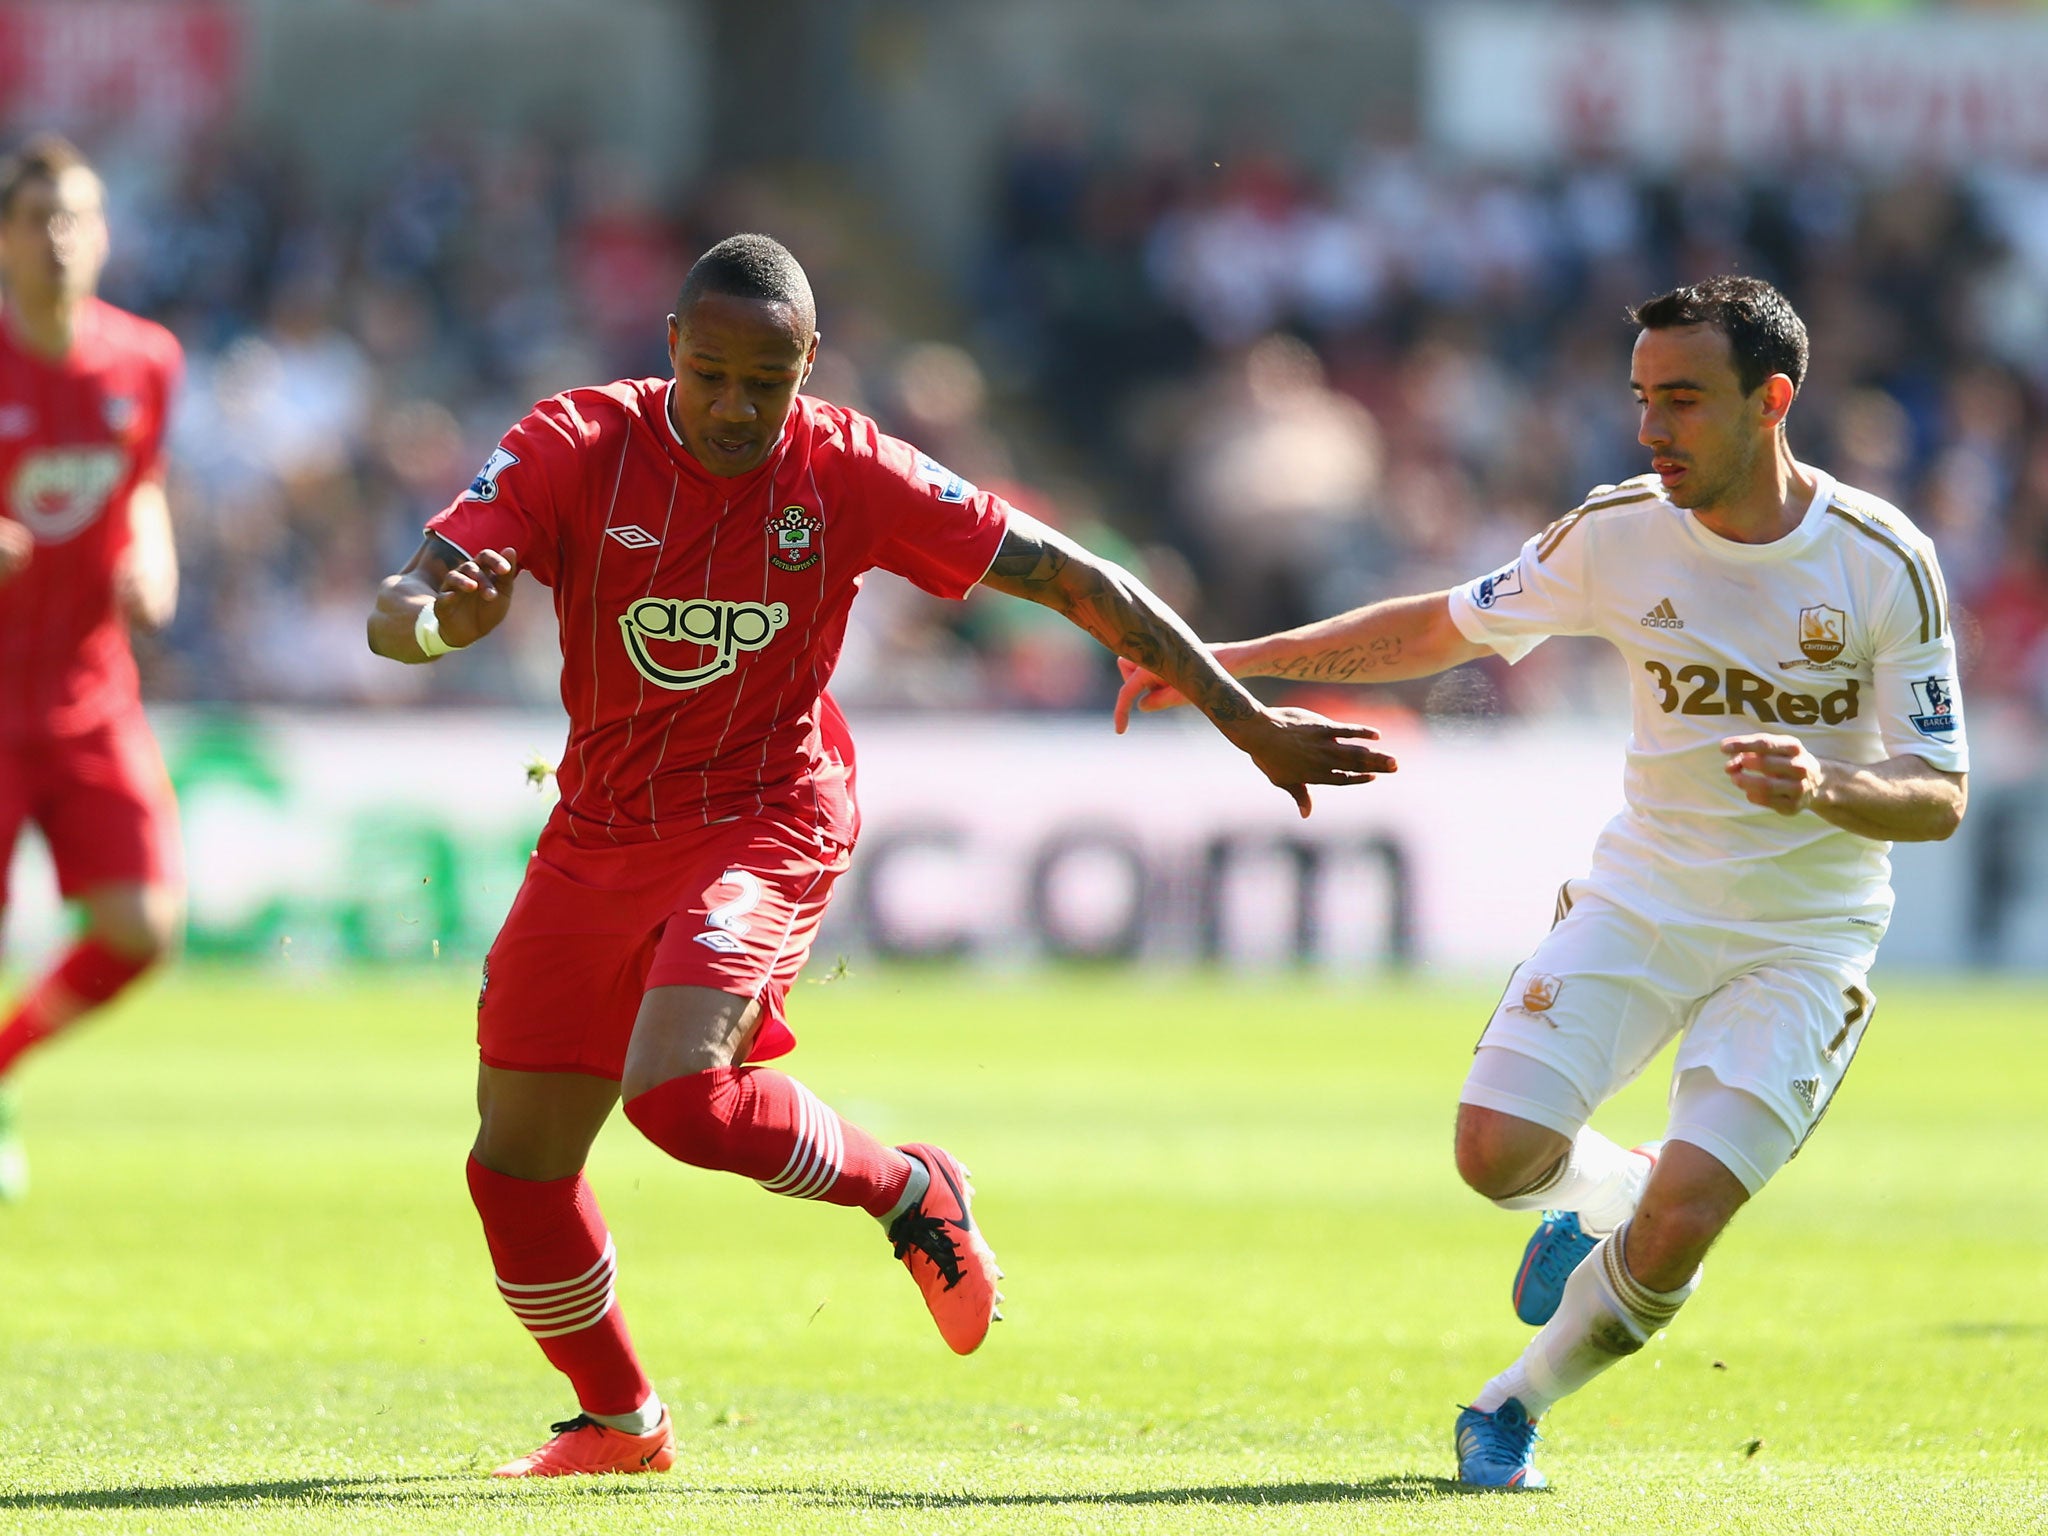 Southampton's Nathaniel Clyne battles with Swansea's Leon Birtton